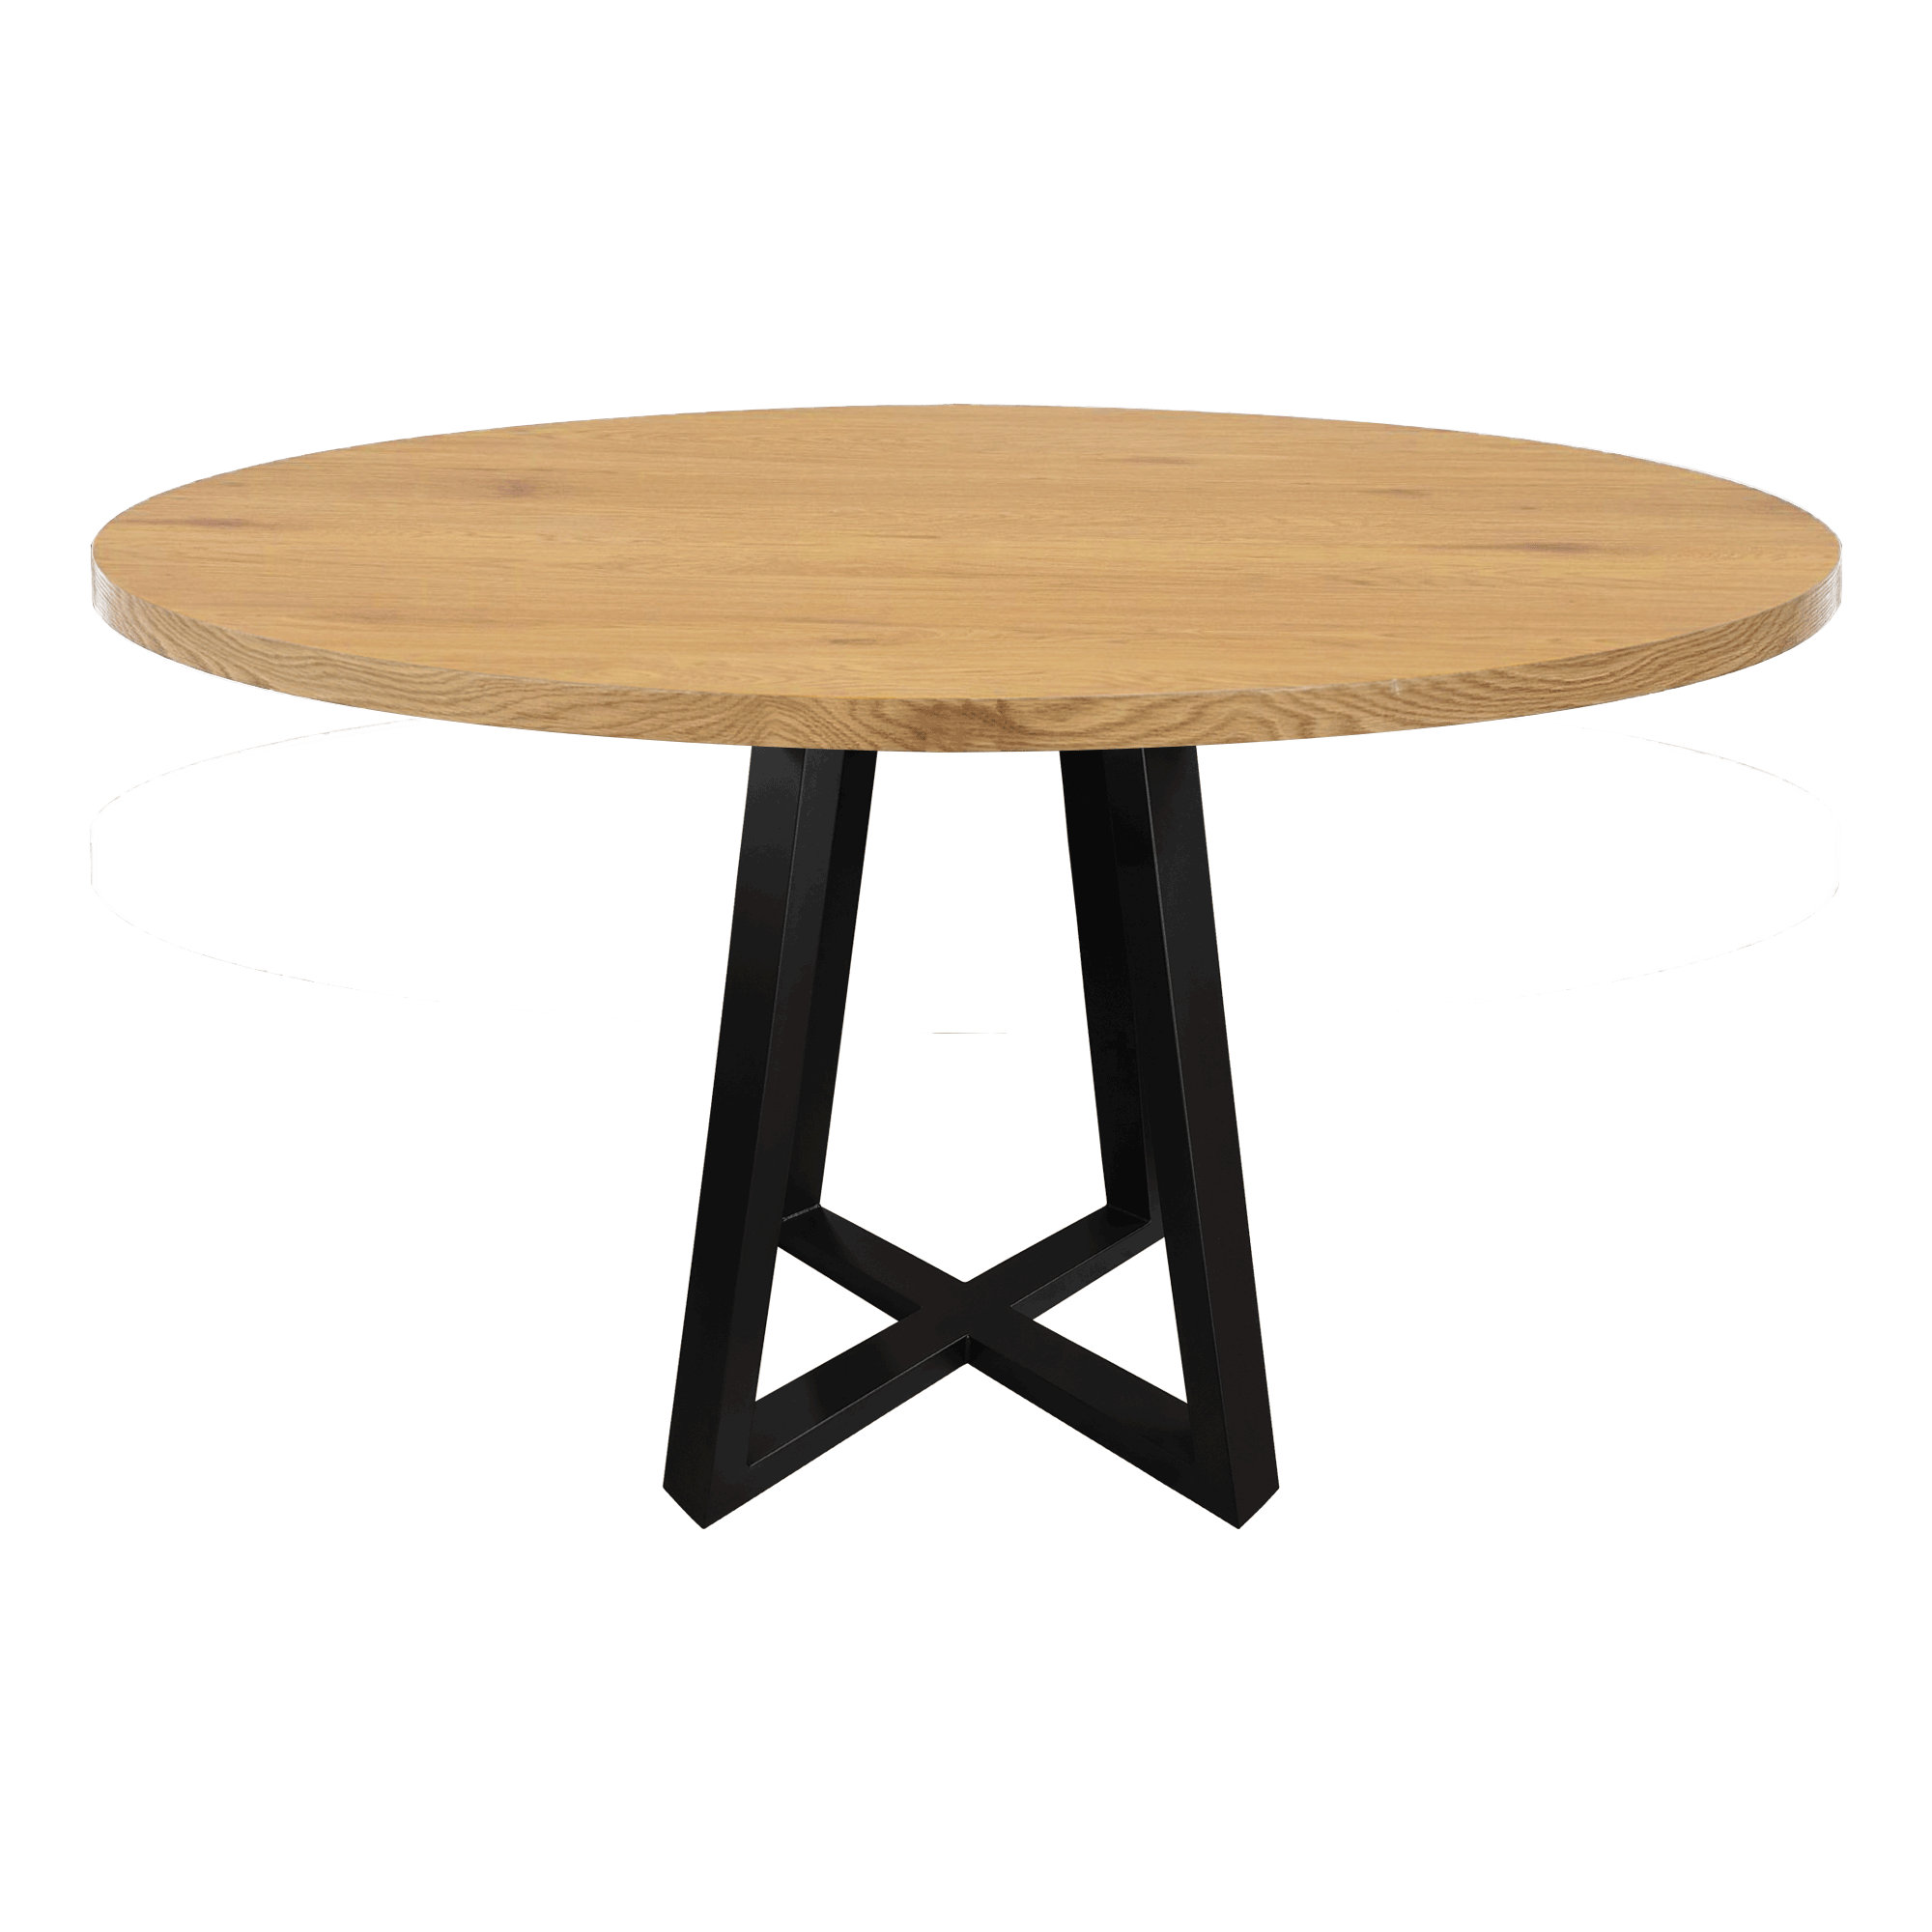 Tischgestell klappbar Tischbeine Tischbein Tischfüße Möbelfuß